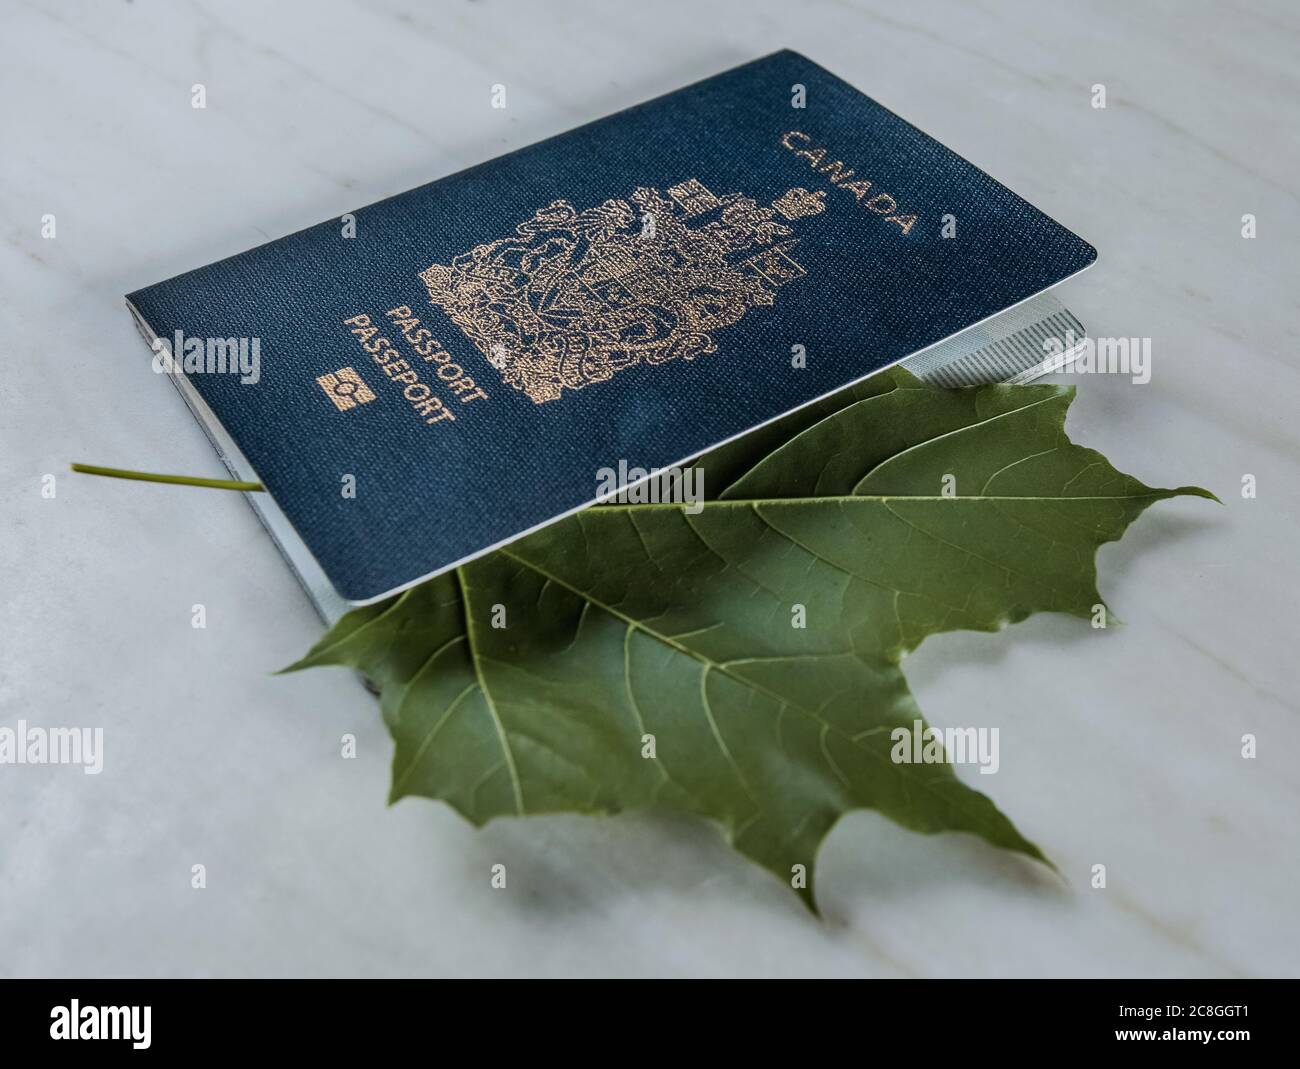 All'interno del passaporto canadese, una foglia di acero verde. Foto Stock